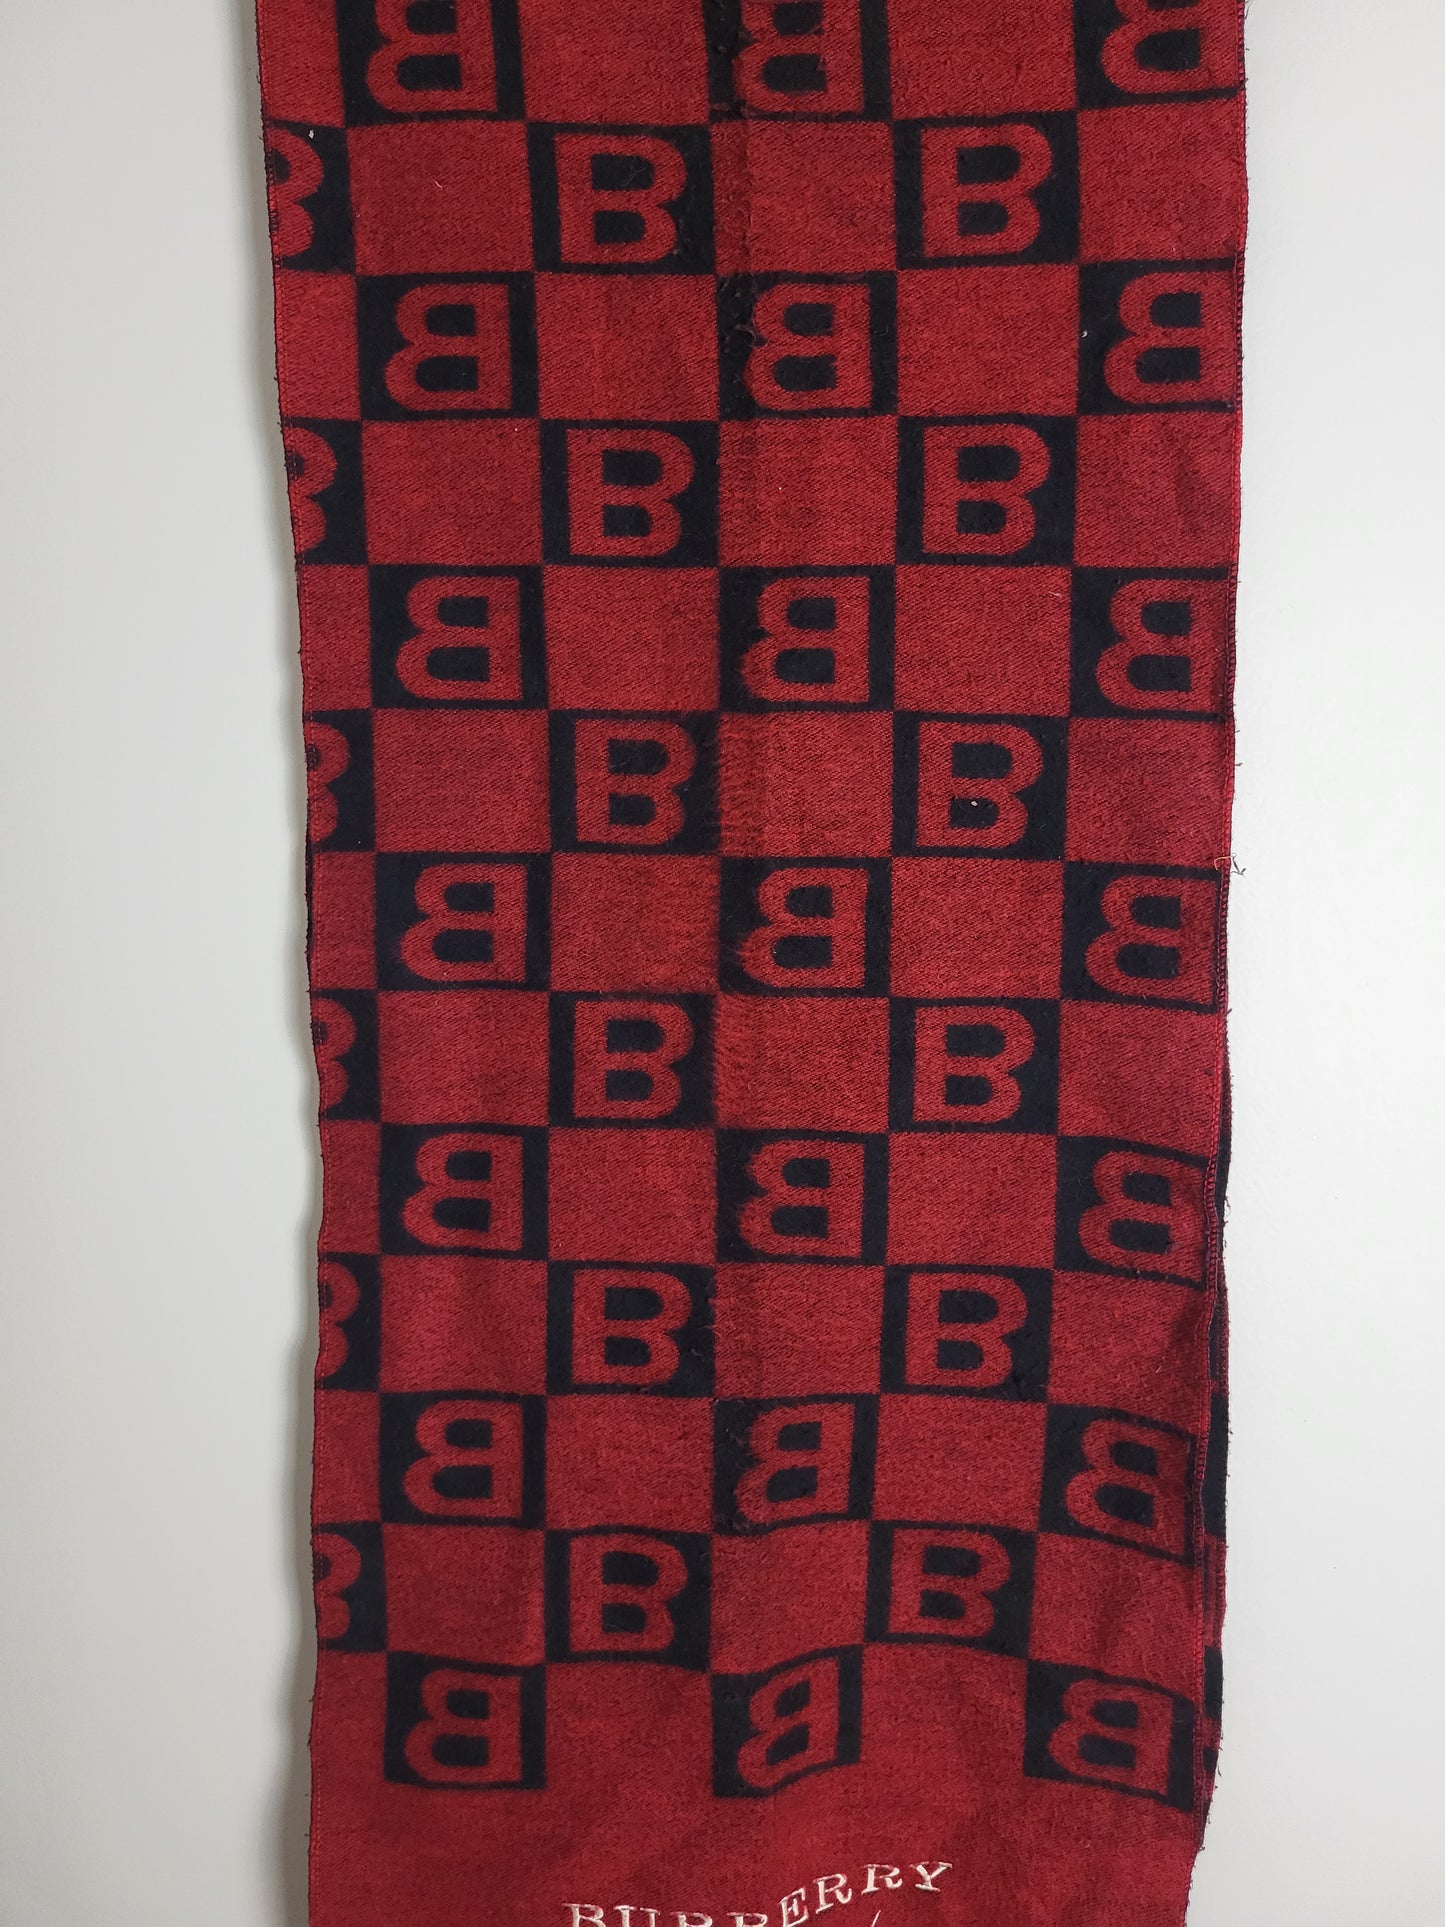 Burberry London - Vintage Schal - Rot / Schwarz Muster - Kaschmir - 168 x 30